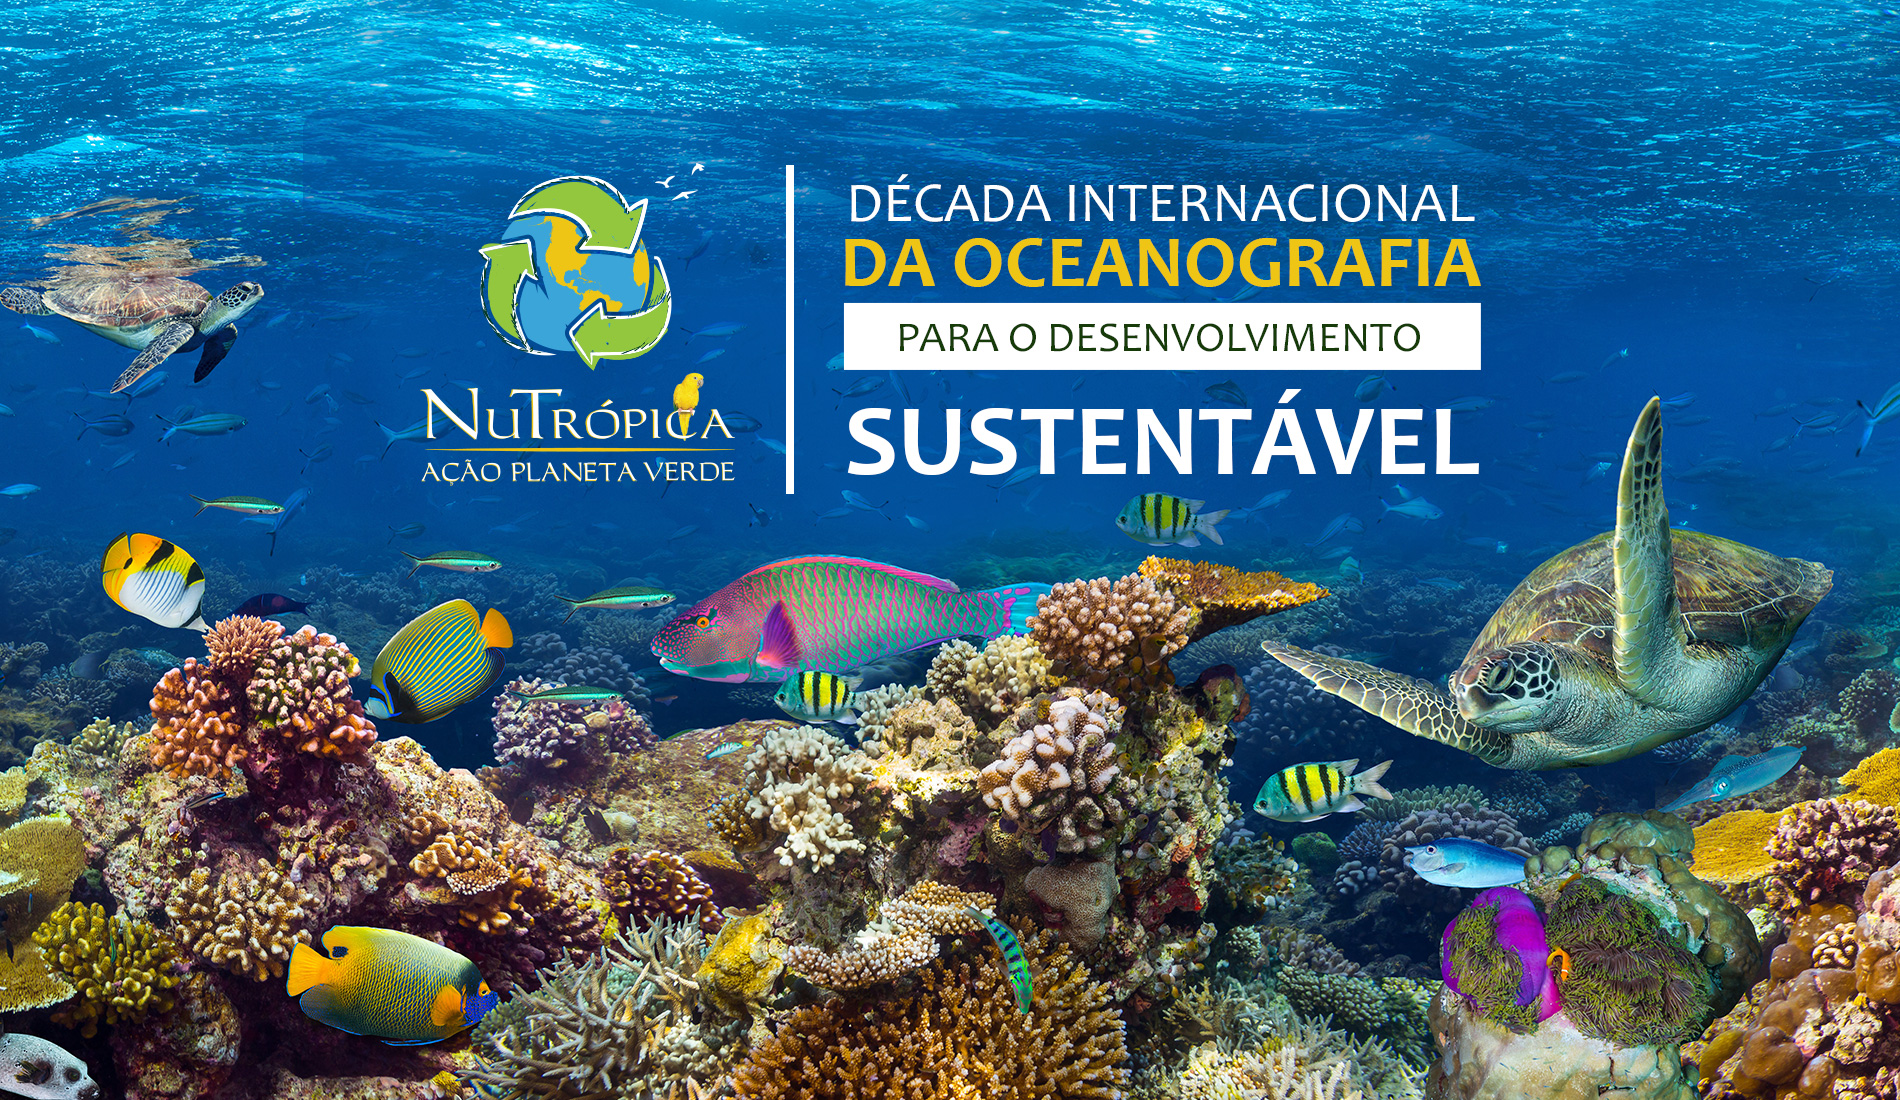 Década Internacional da Oceanografia para o Desenvolvimento Sustentável
